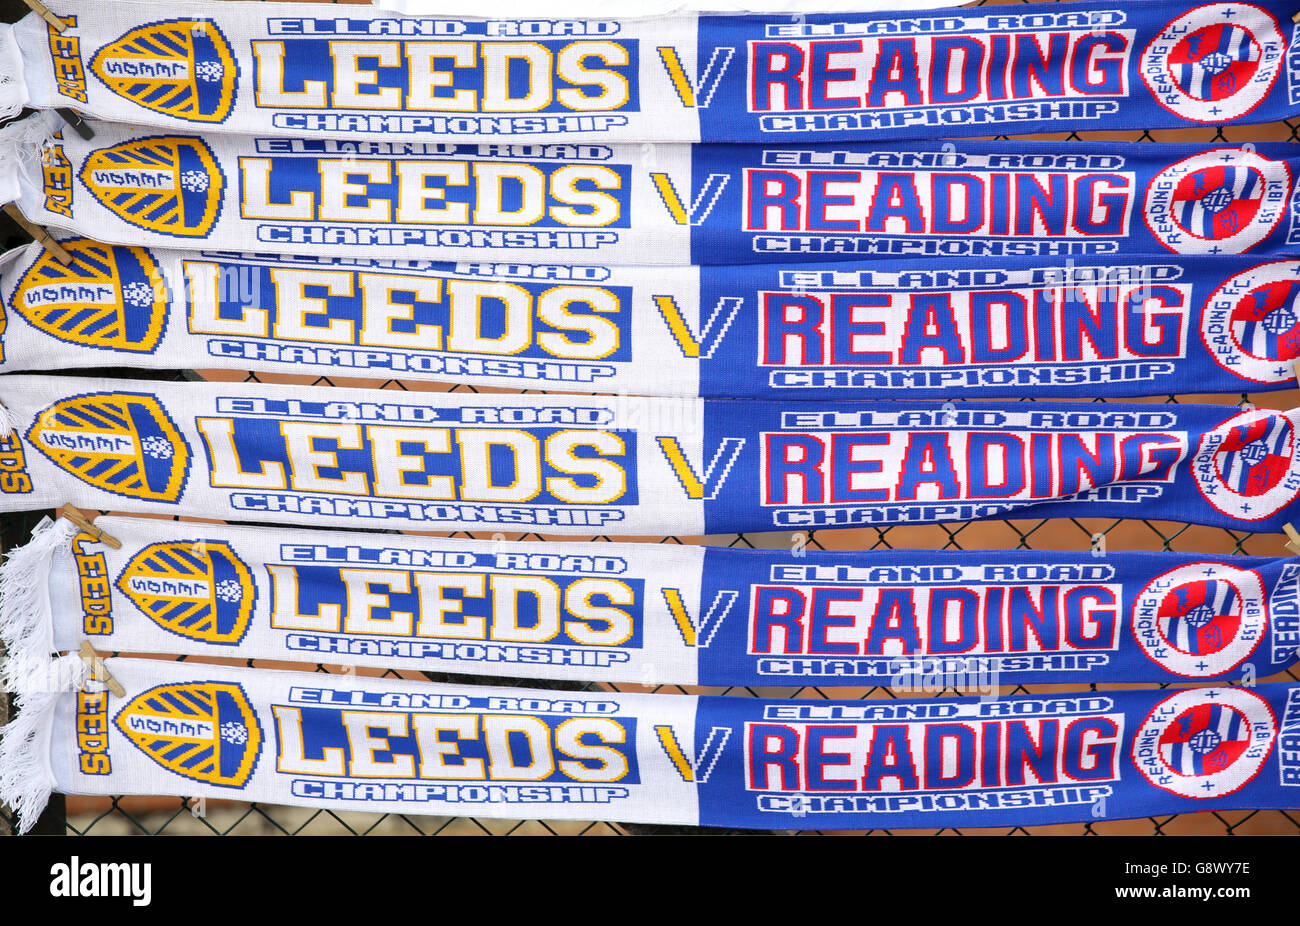 Leeds United v Reading - Sky Bet Championship - Elland Road.Vue générale de la moitié et de la moitié des foulards Leeds v Reading sur un stand de marchandises Banque D'Images